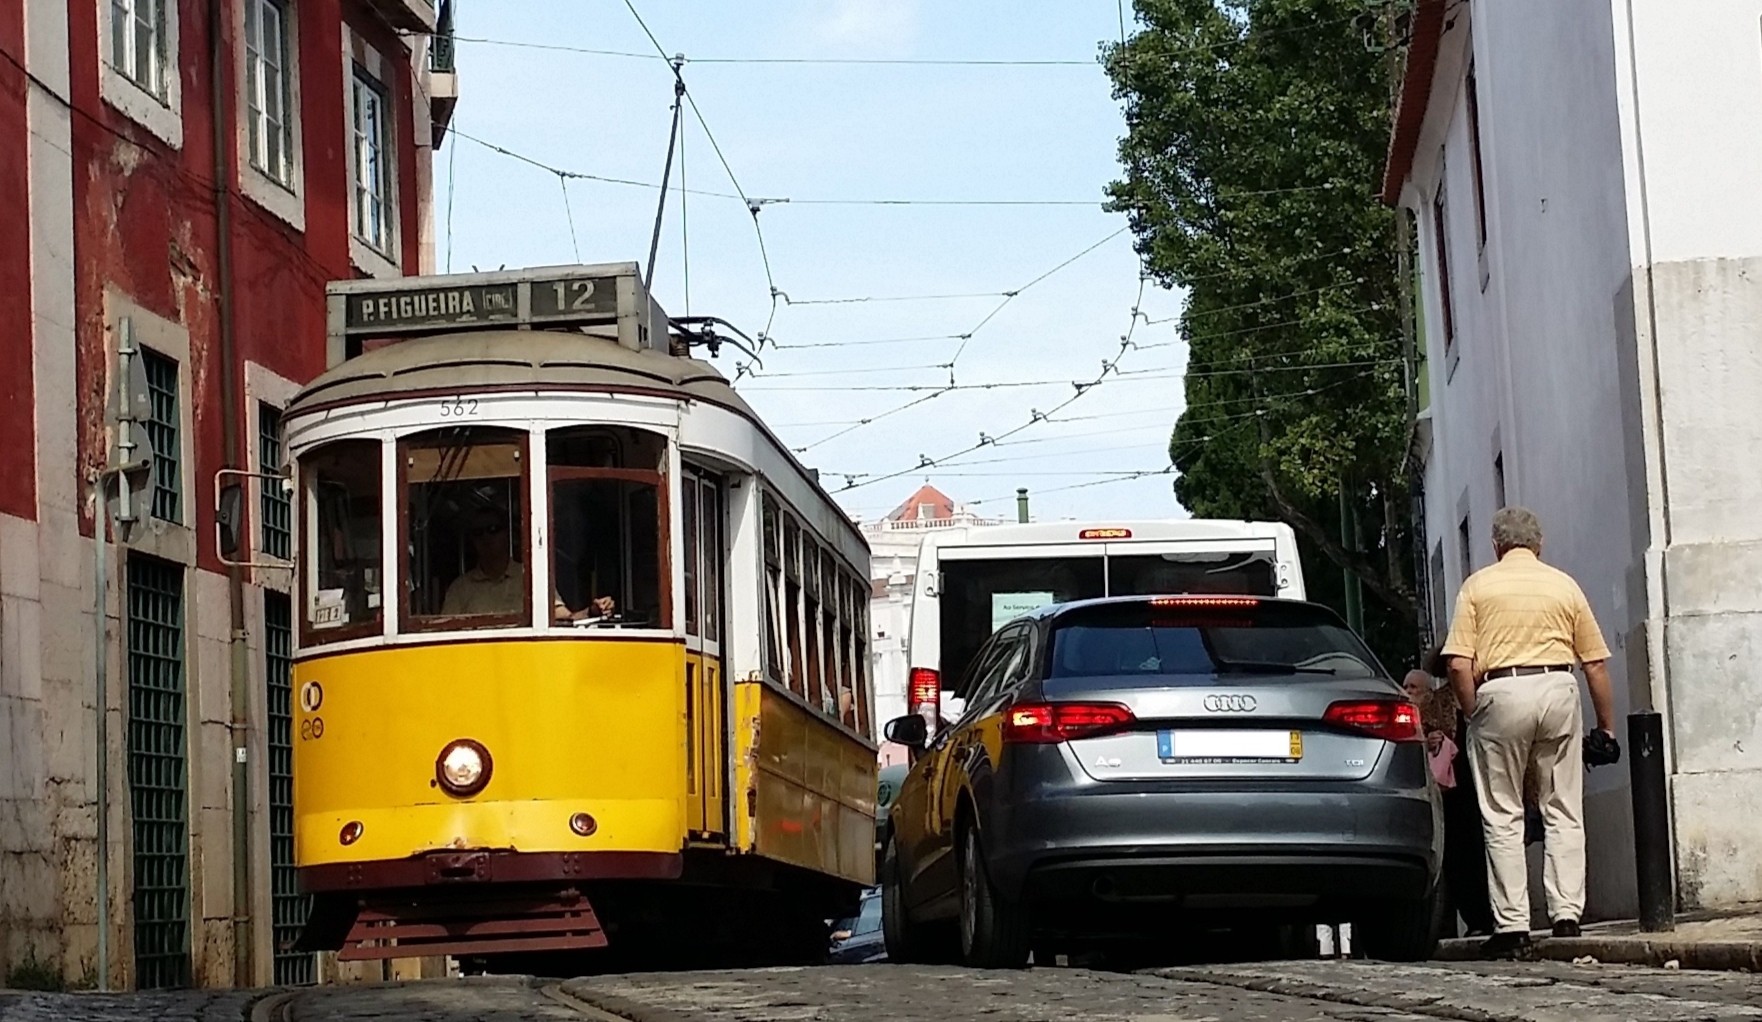 Bondinho e carro disputam espaço numa rua de Alfama, em Lisboa